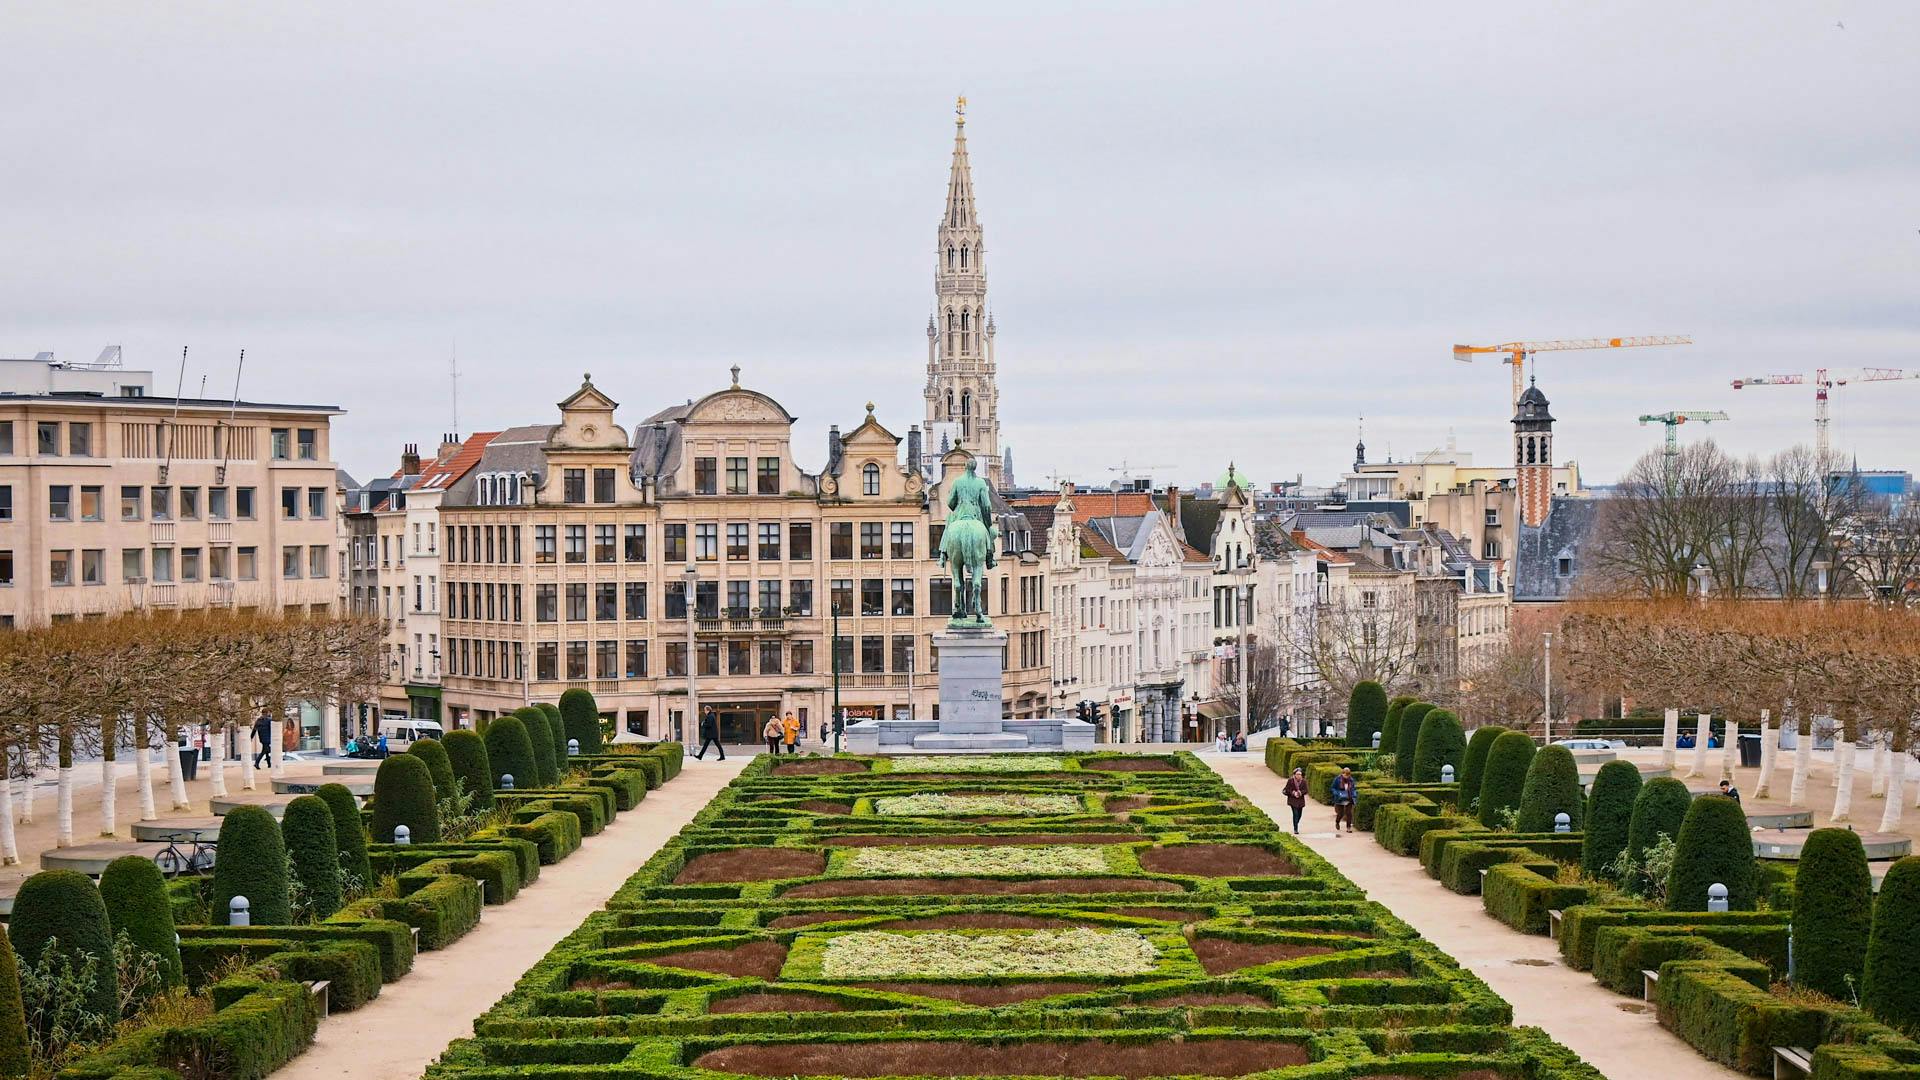 Tourist park in Brussels, Belgium